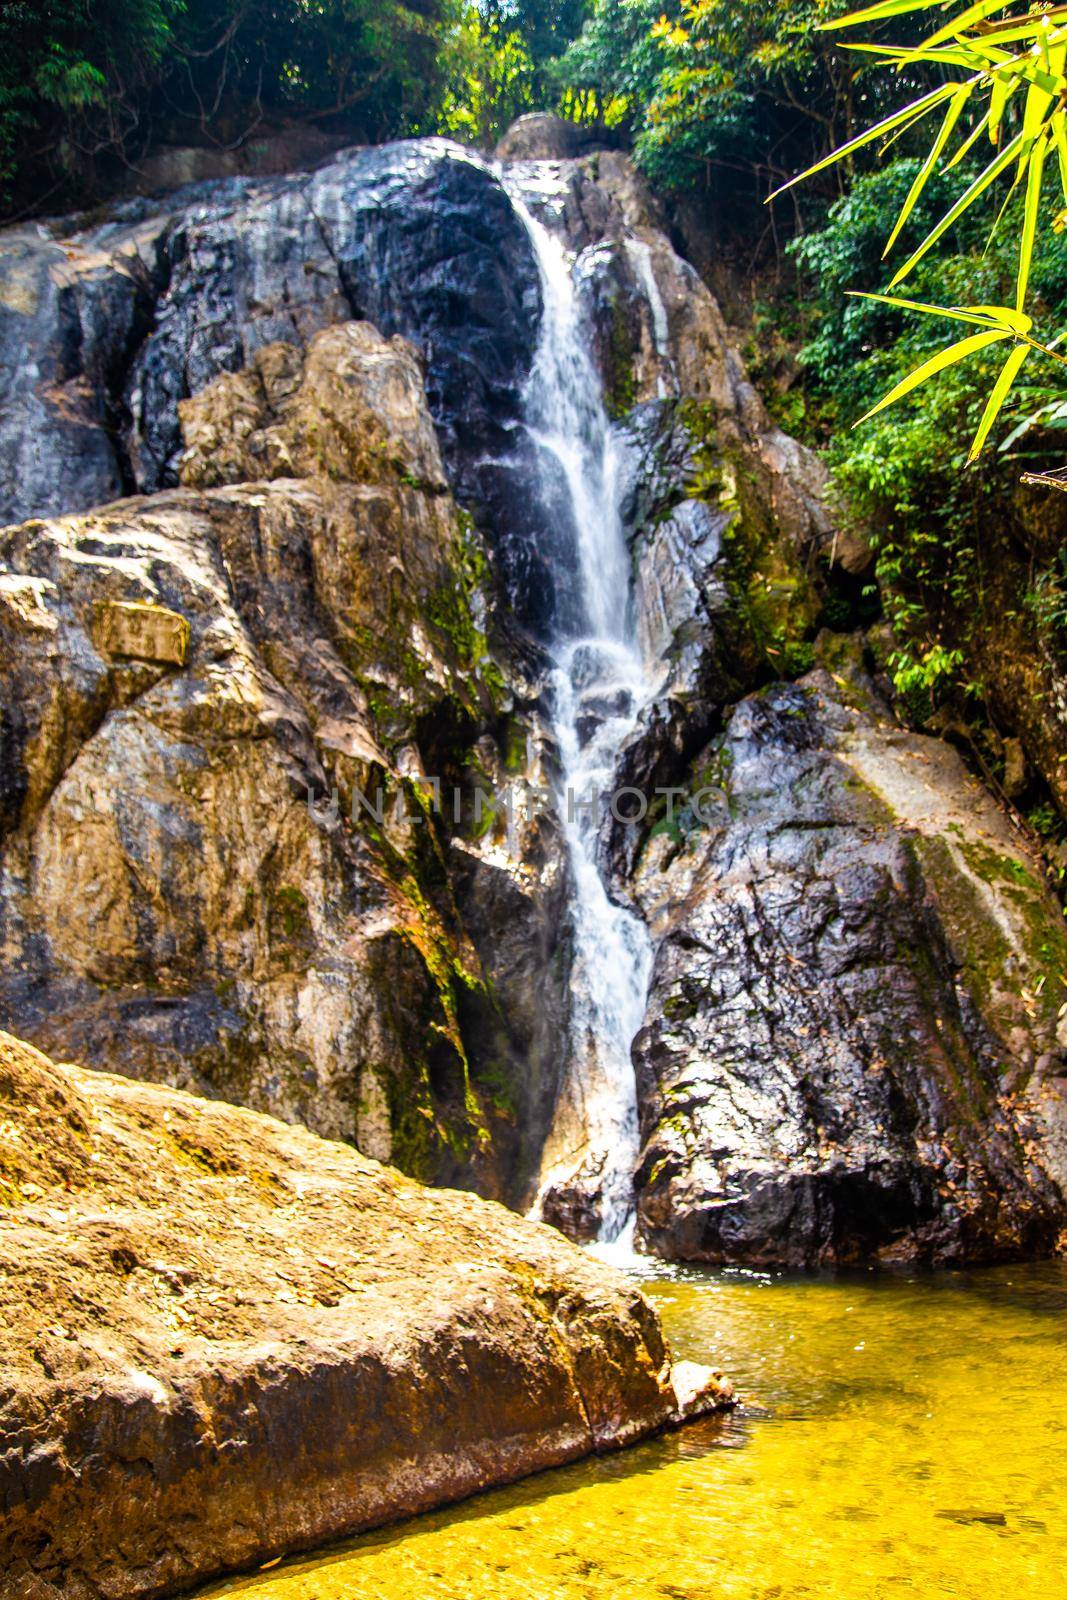 Punyaban waterfall in Ranong, Thailand by worldpitou